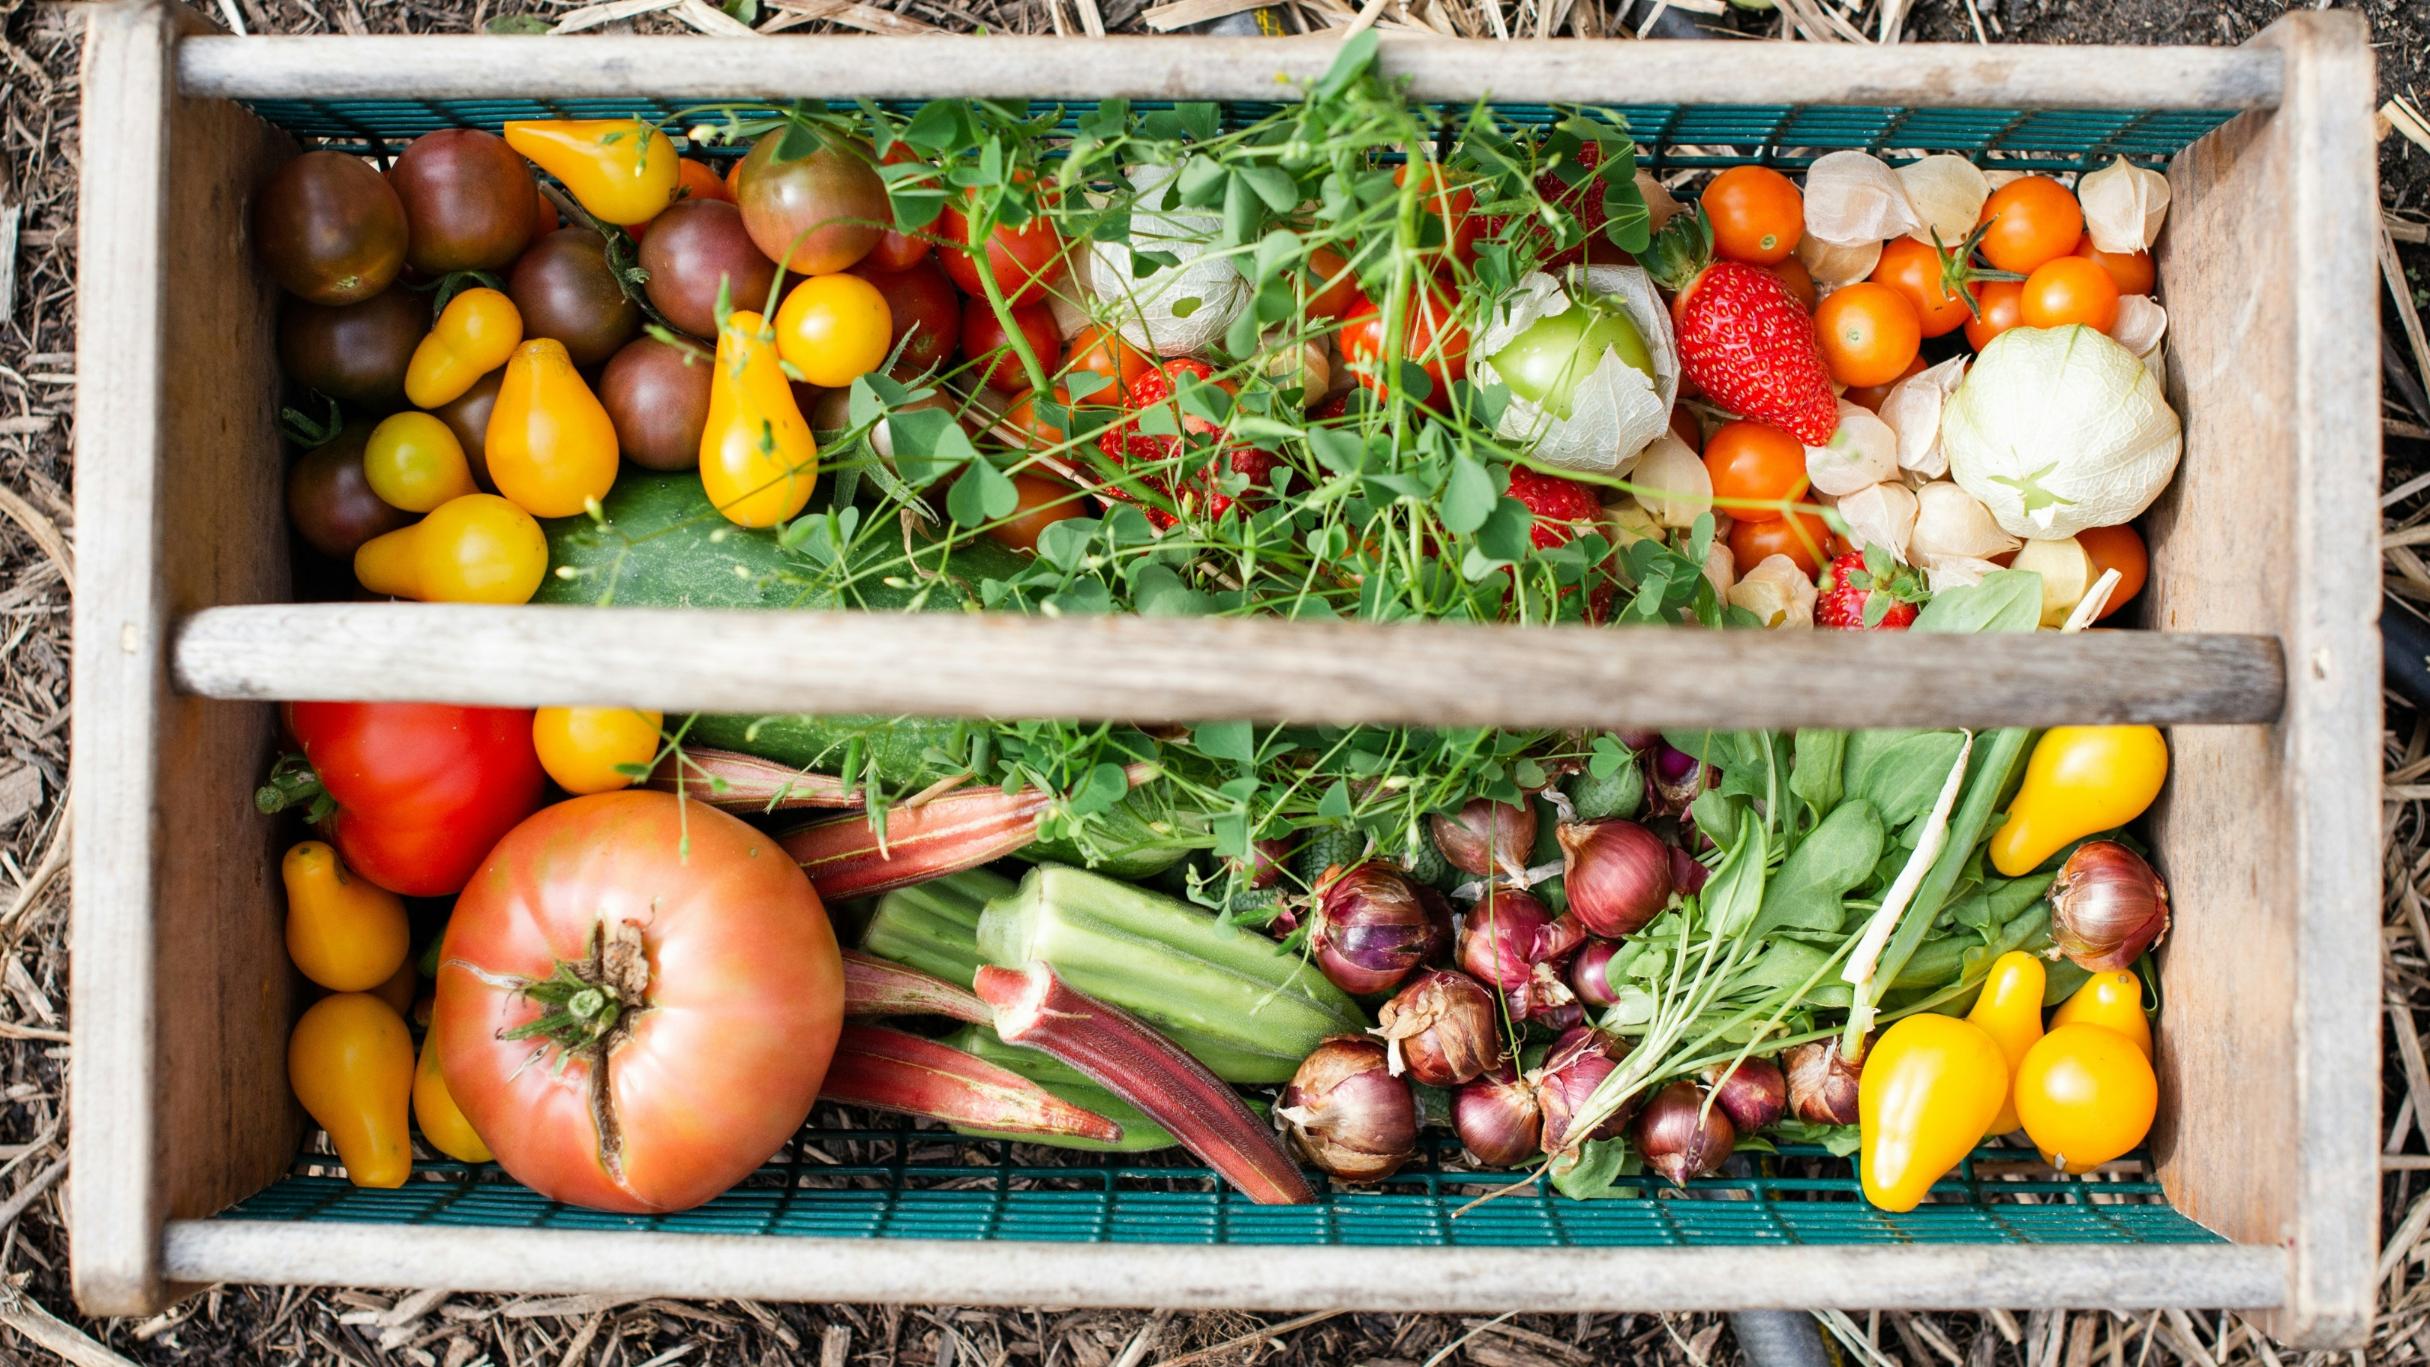 In einer Holzkiste liegen verschiedene Obst- und Gemüsesorten wie Tomaten, Erdbeeren, Zwiebeln, Rhabarber